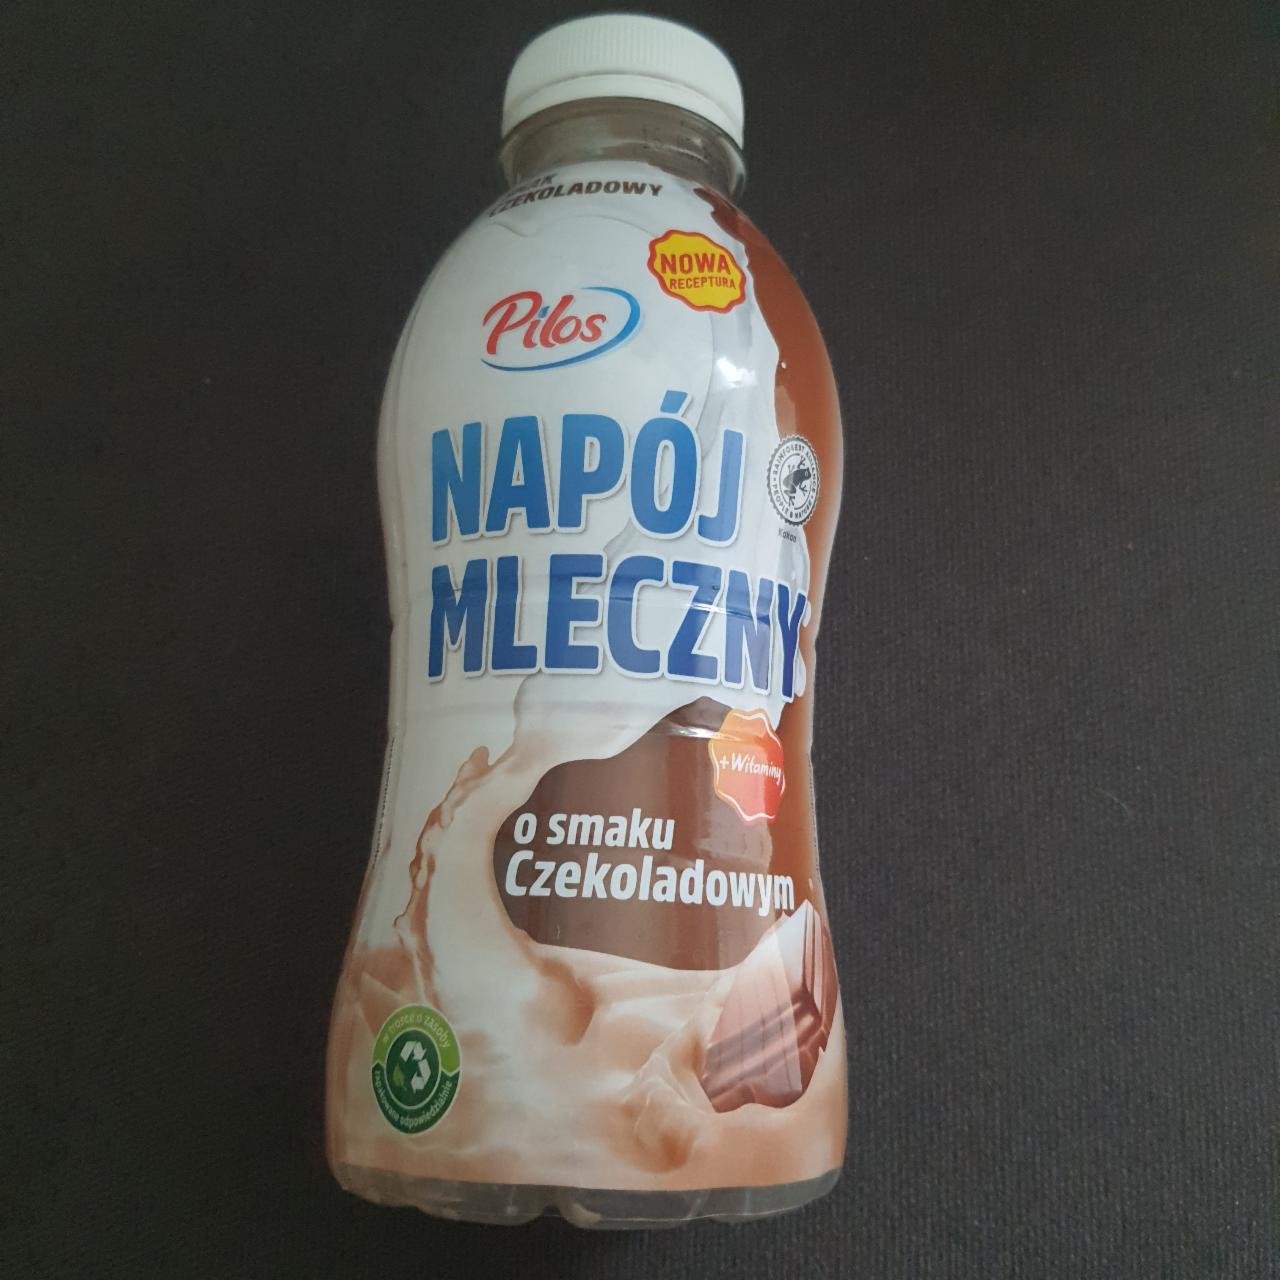 Zdjęcia - Napój mleczny o smaku czekoladowym Pilos